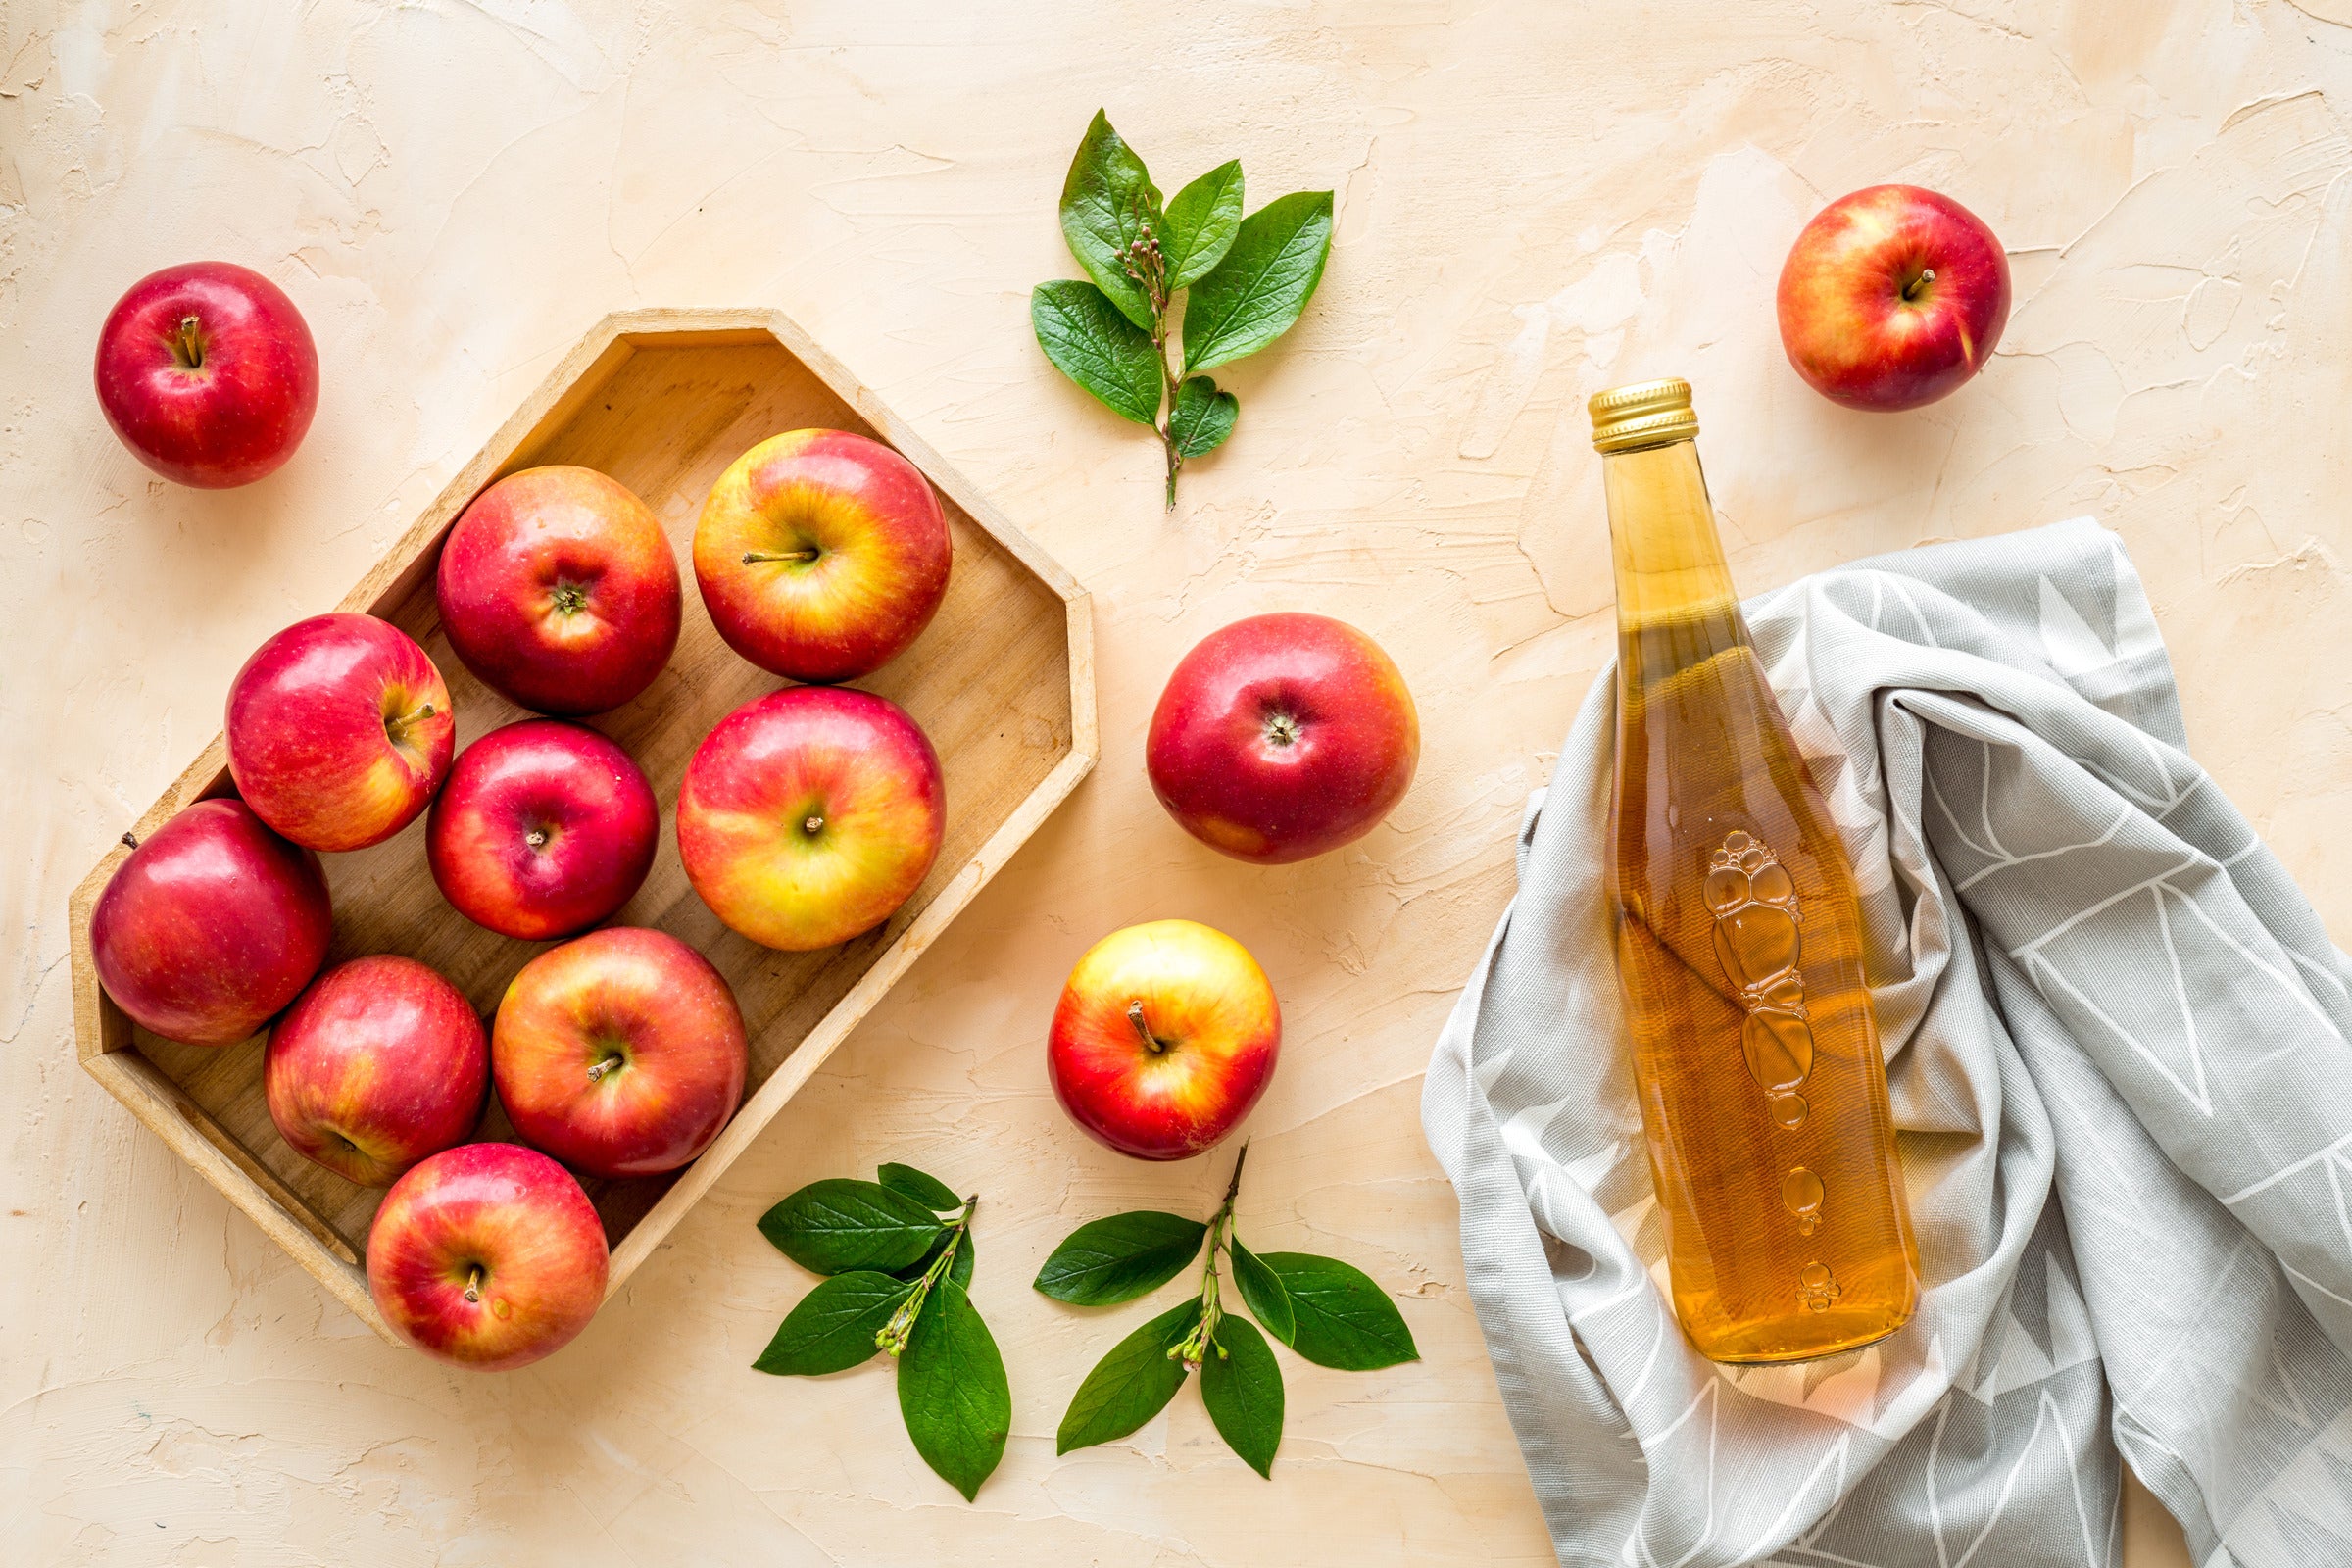 Apple cider vinegar and tea tree oil